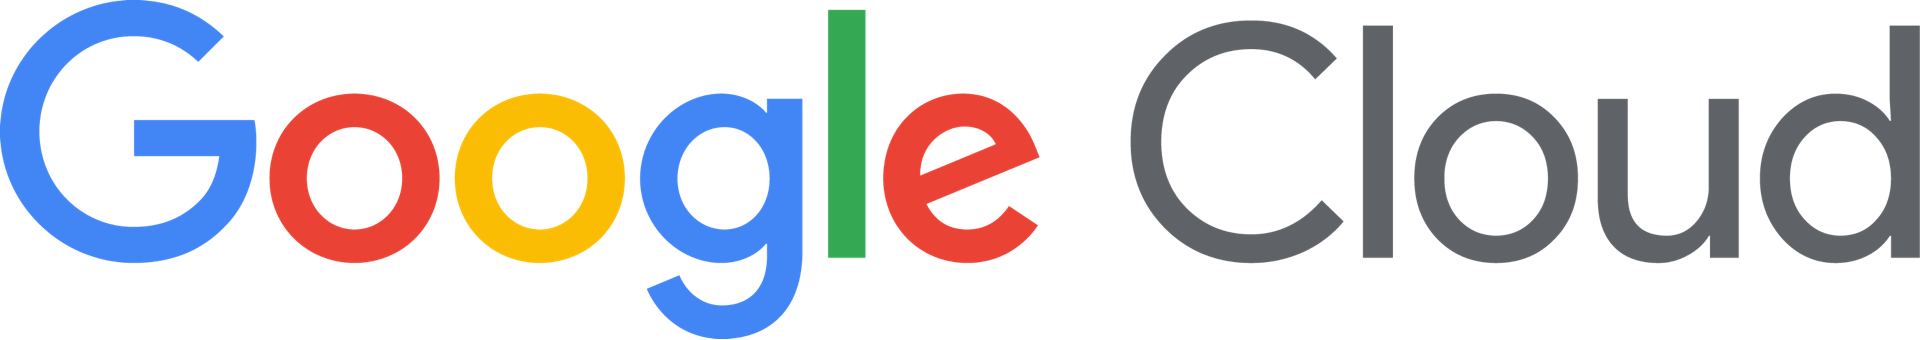 logo_googleCloud.png